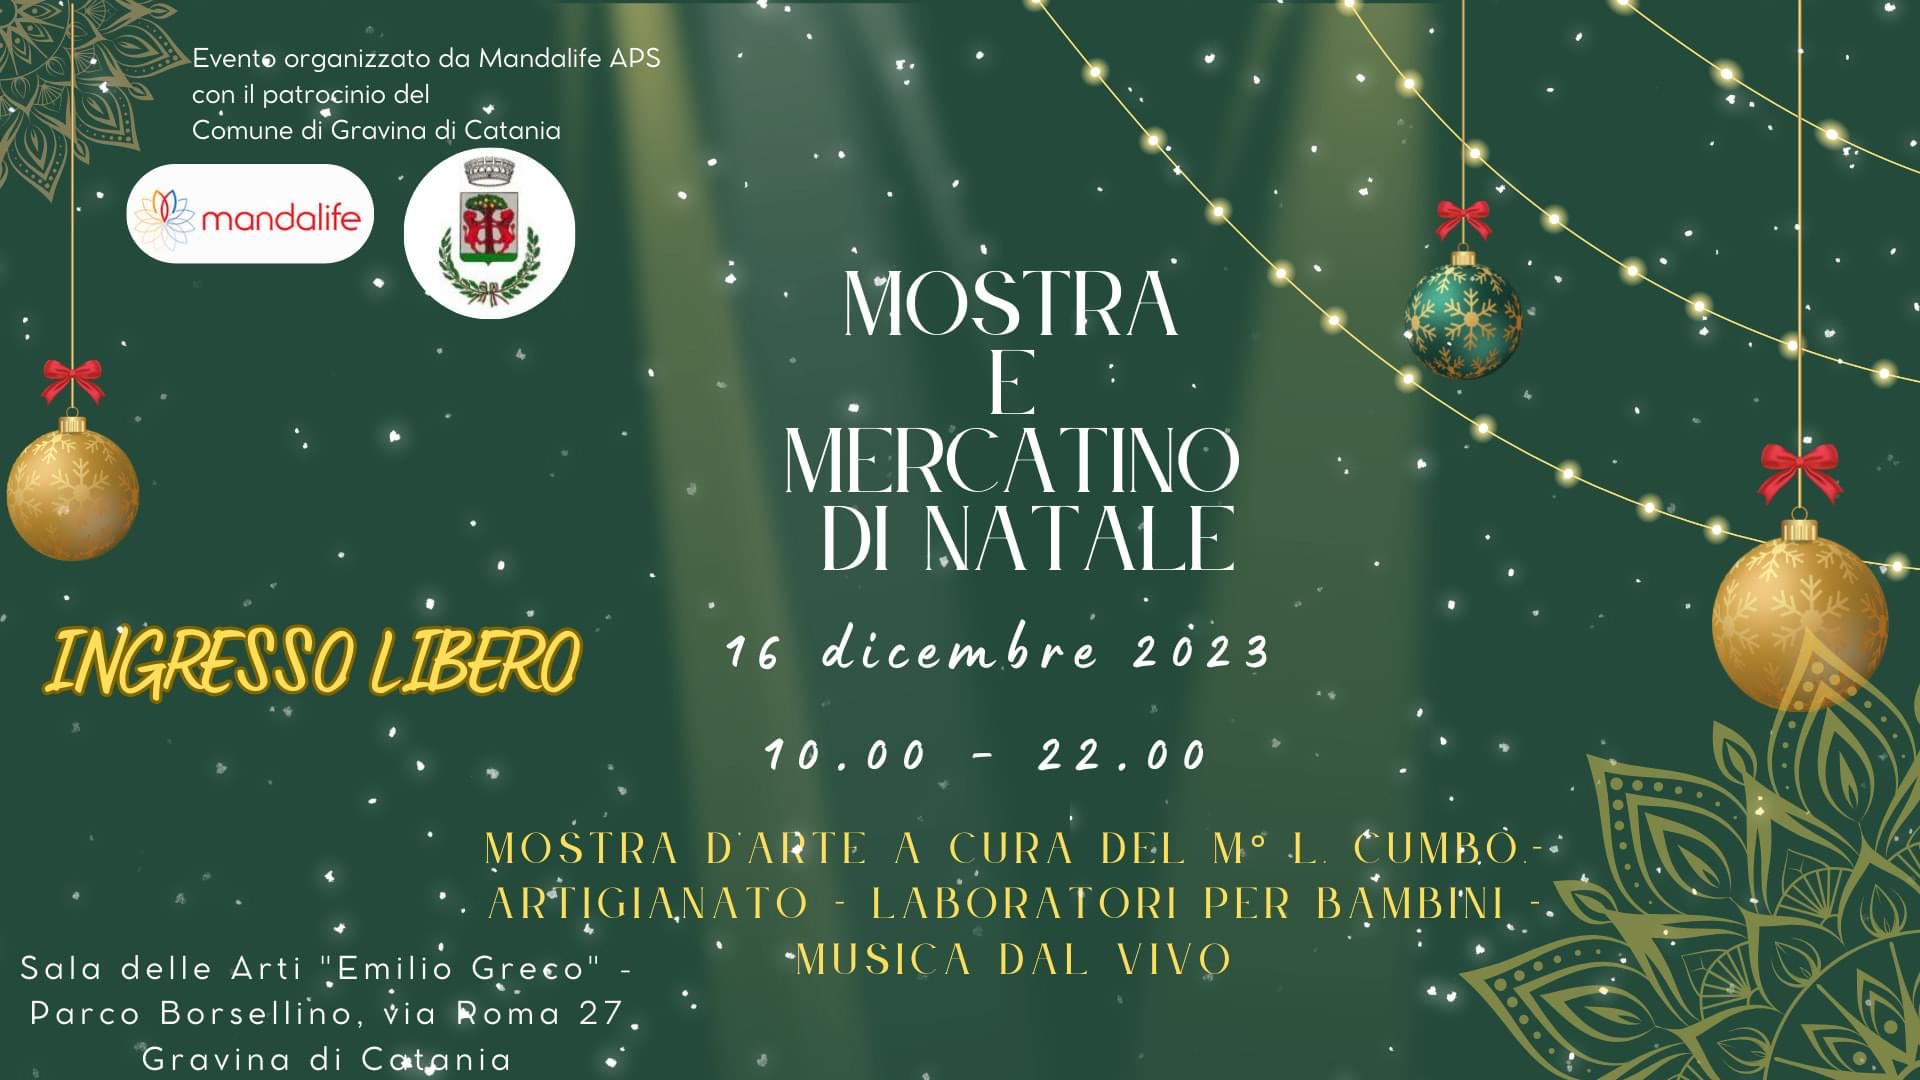 Sabato 16 dicembre dalle ore 10:00 alle ore 23:00 mostra e mercatino di Natale a Gravina al parco "Borsellino" 